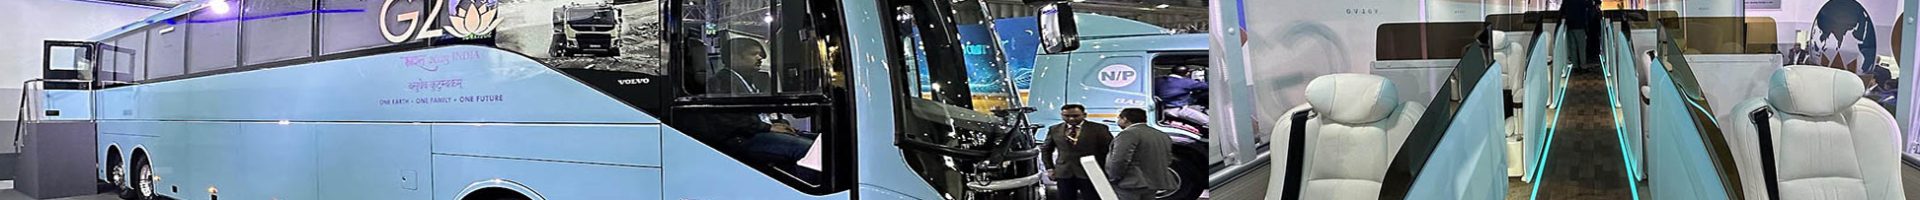 Автобус Volvo в варианте СУПЕР-ЛЮКС